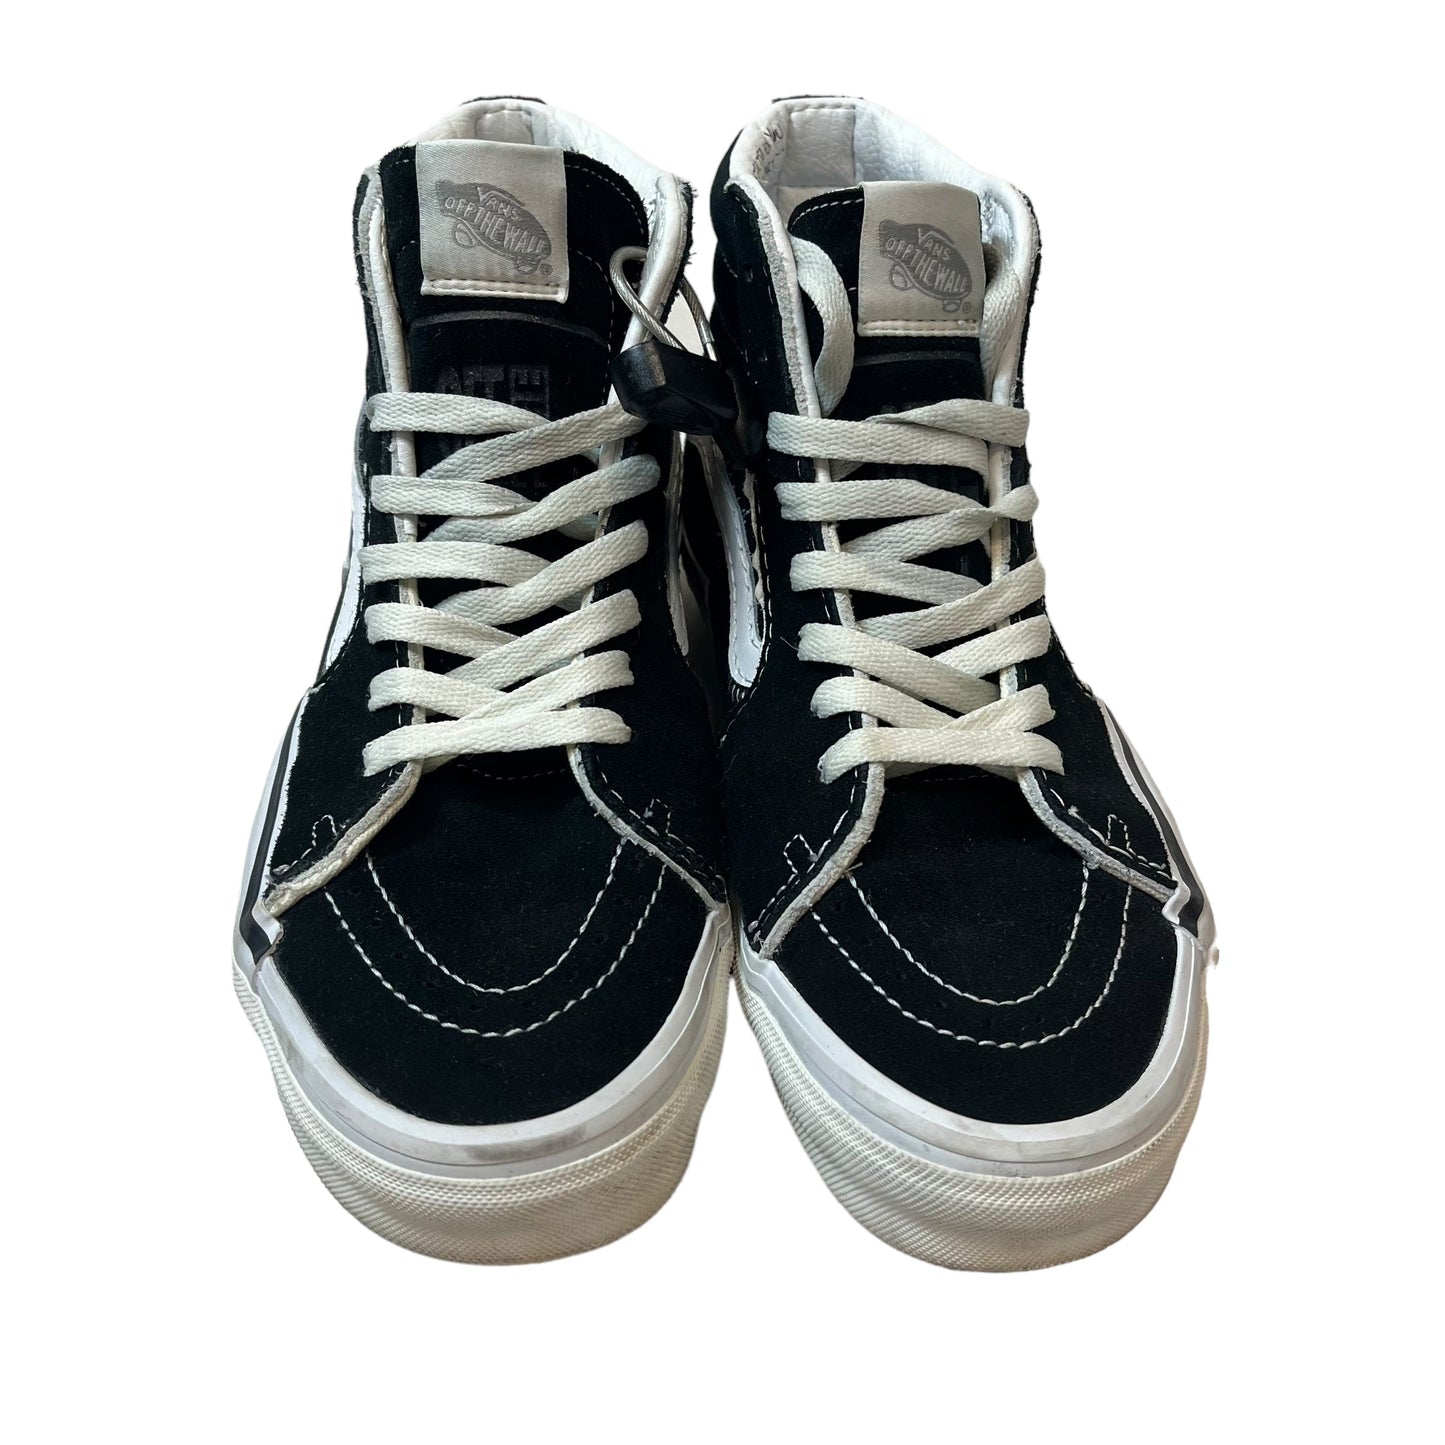 Black Shoes Sneakers Vans, Size 10